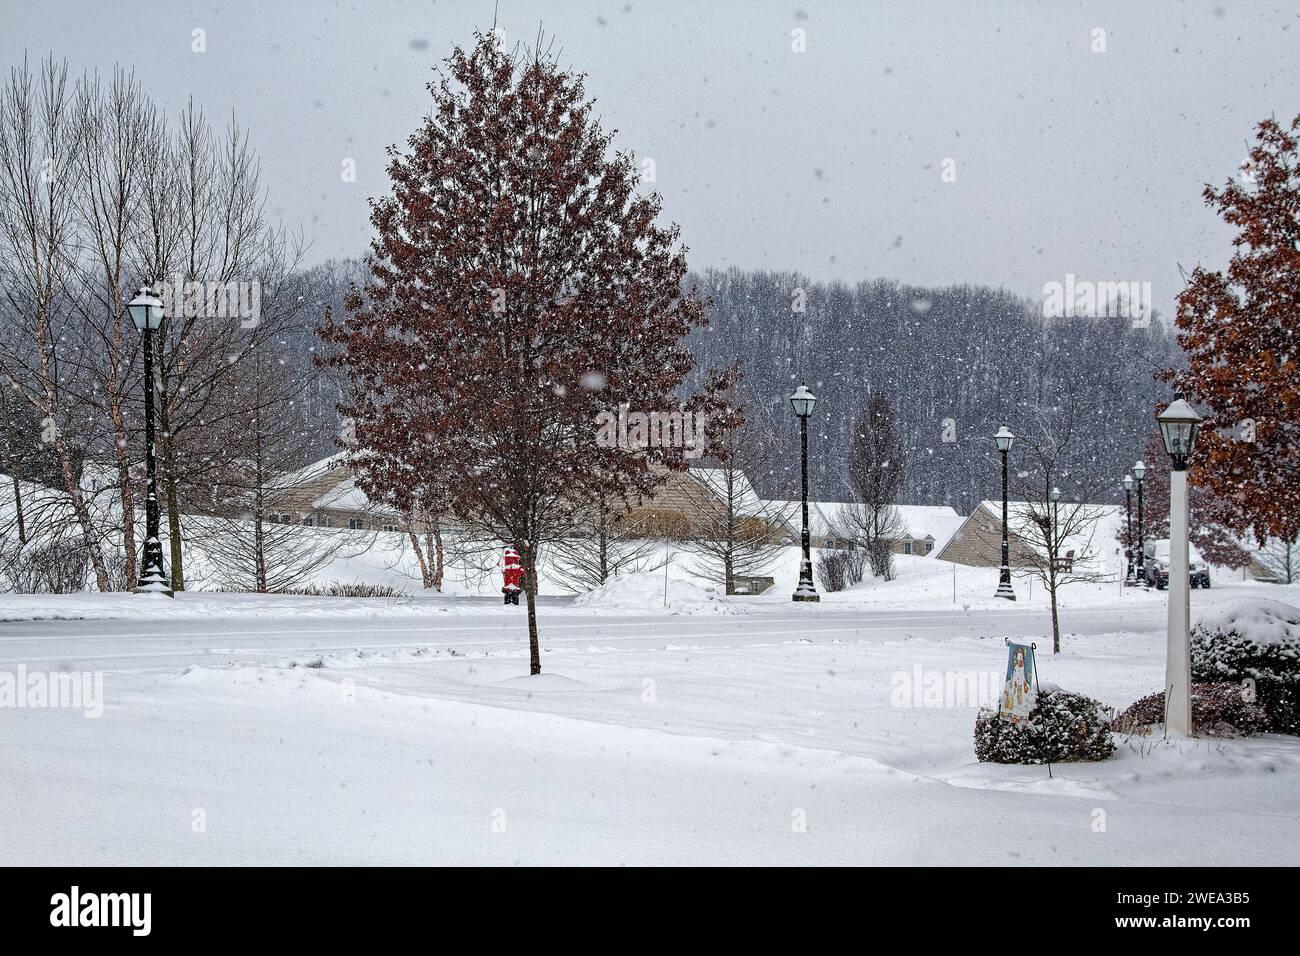 Schneeszene, Landschaft, Bäume, Straßenlaternen, Häuser, schneebedeckte Straße, ruhig, friedlich, ruhig, Winter, Pennsylvania, Chester County, PA Stockfoto